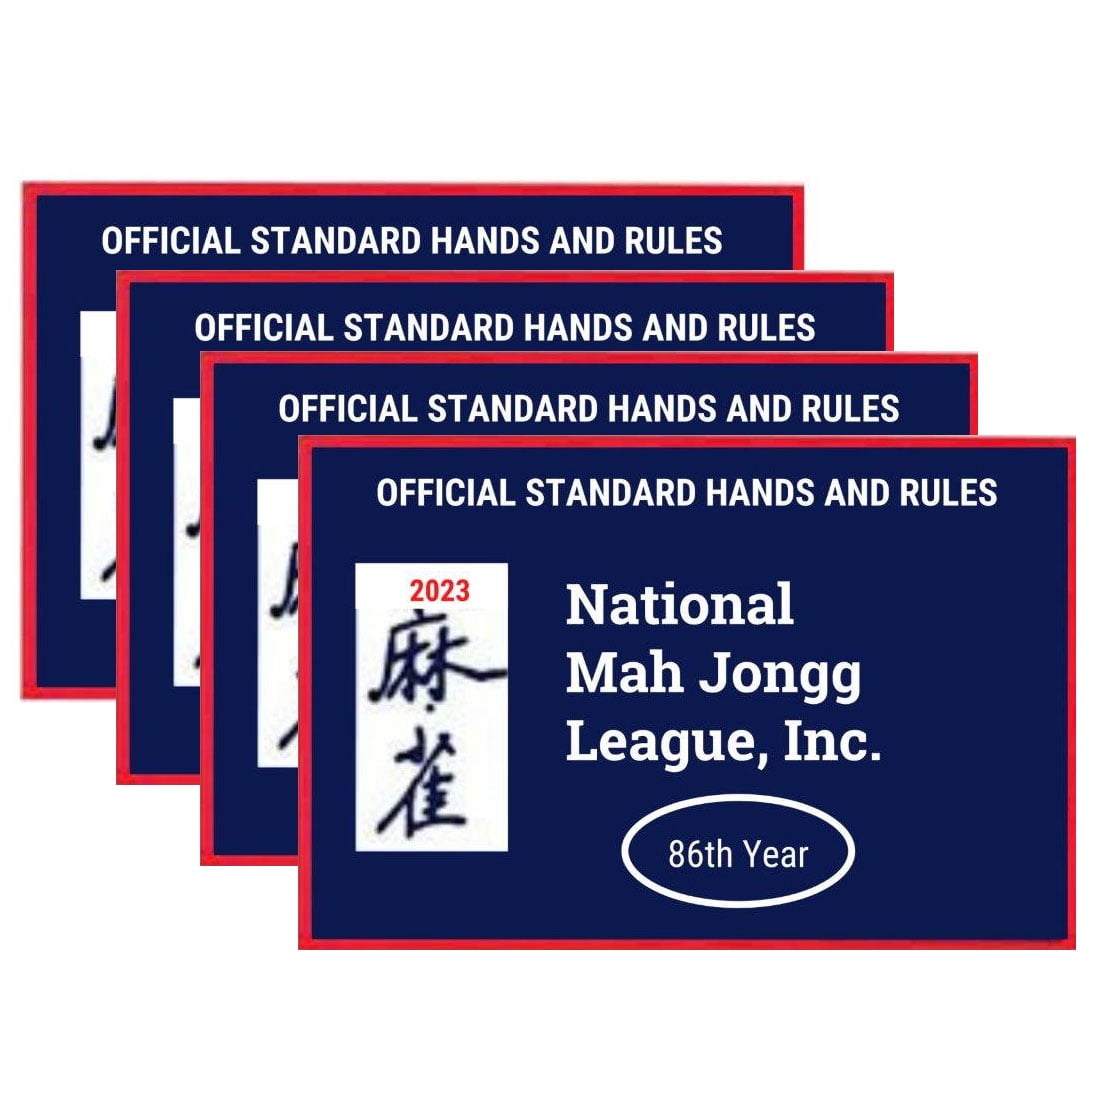 2022 New National Mah Jongg League Large Size Card Mah Jongg Card